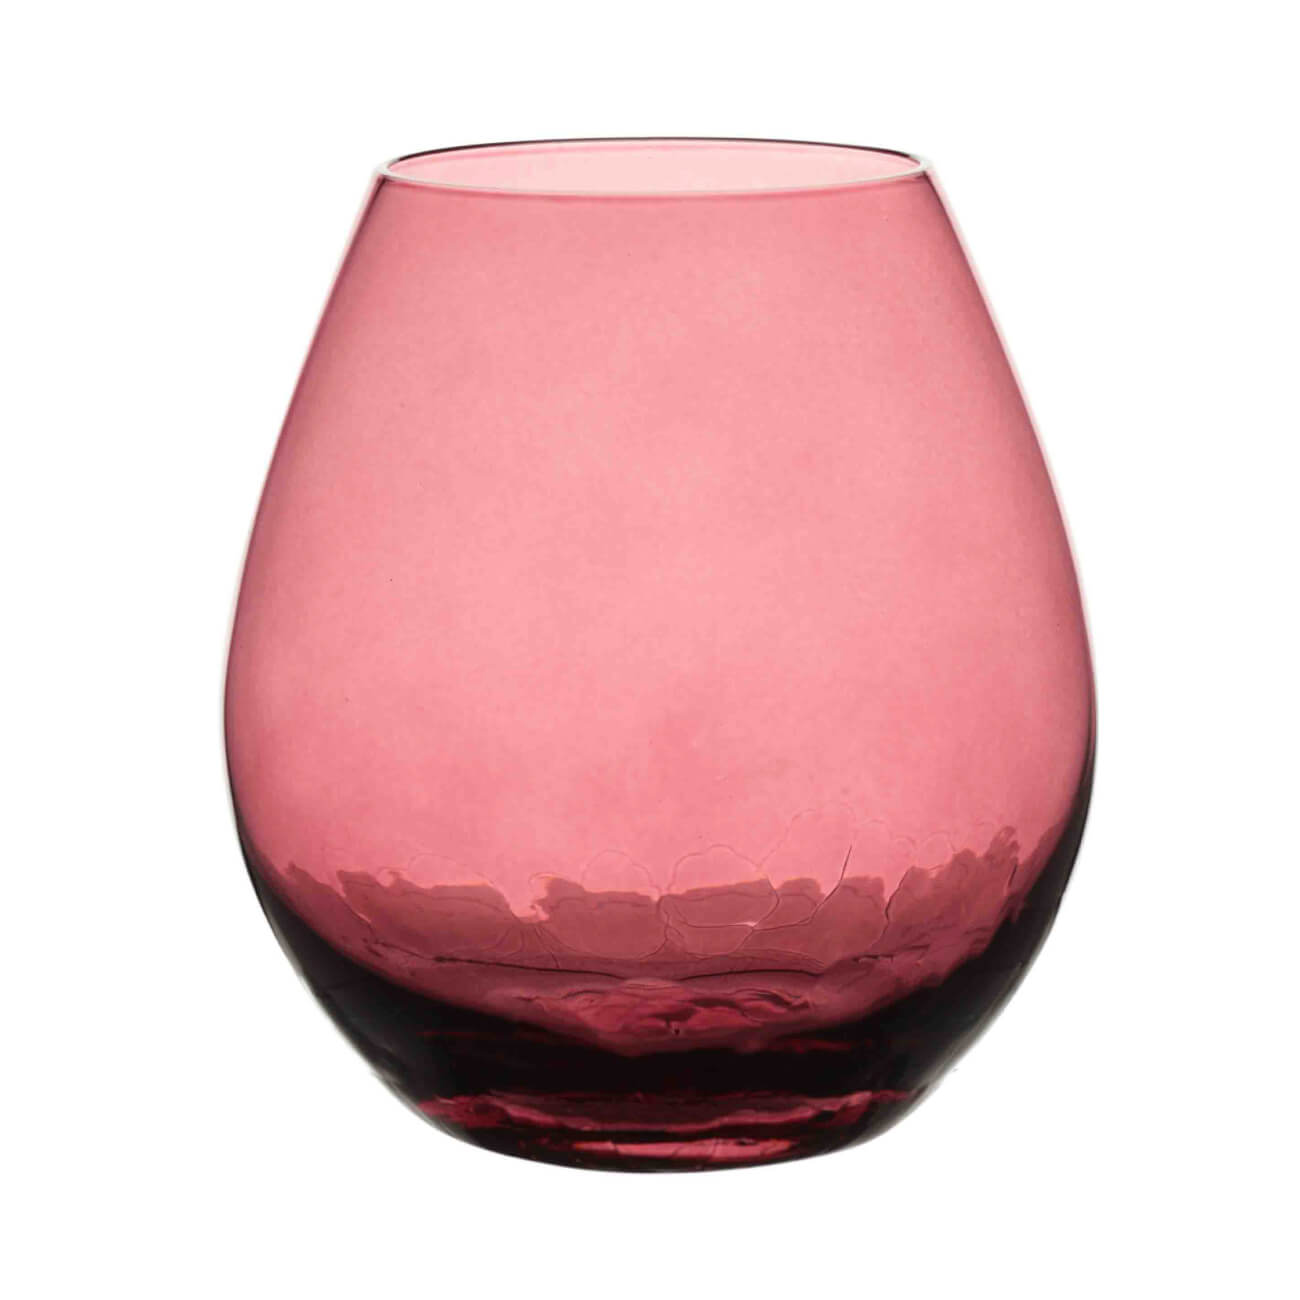 Стакан для виски, 12 см, 450 мл, стекло, бордовый, Кракелюр, Ice color ваза стекло настольная 8 см декостек виски 767 н5